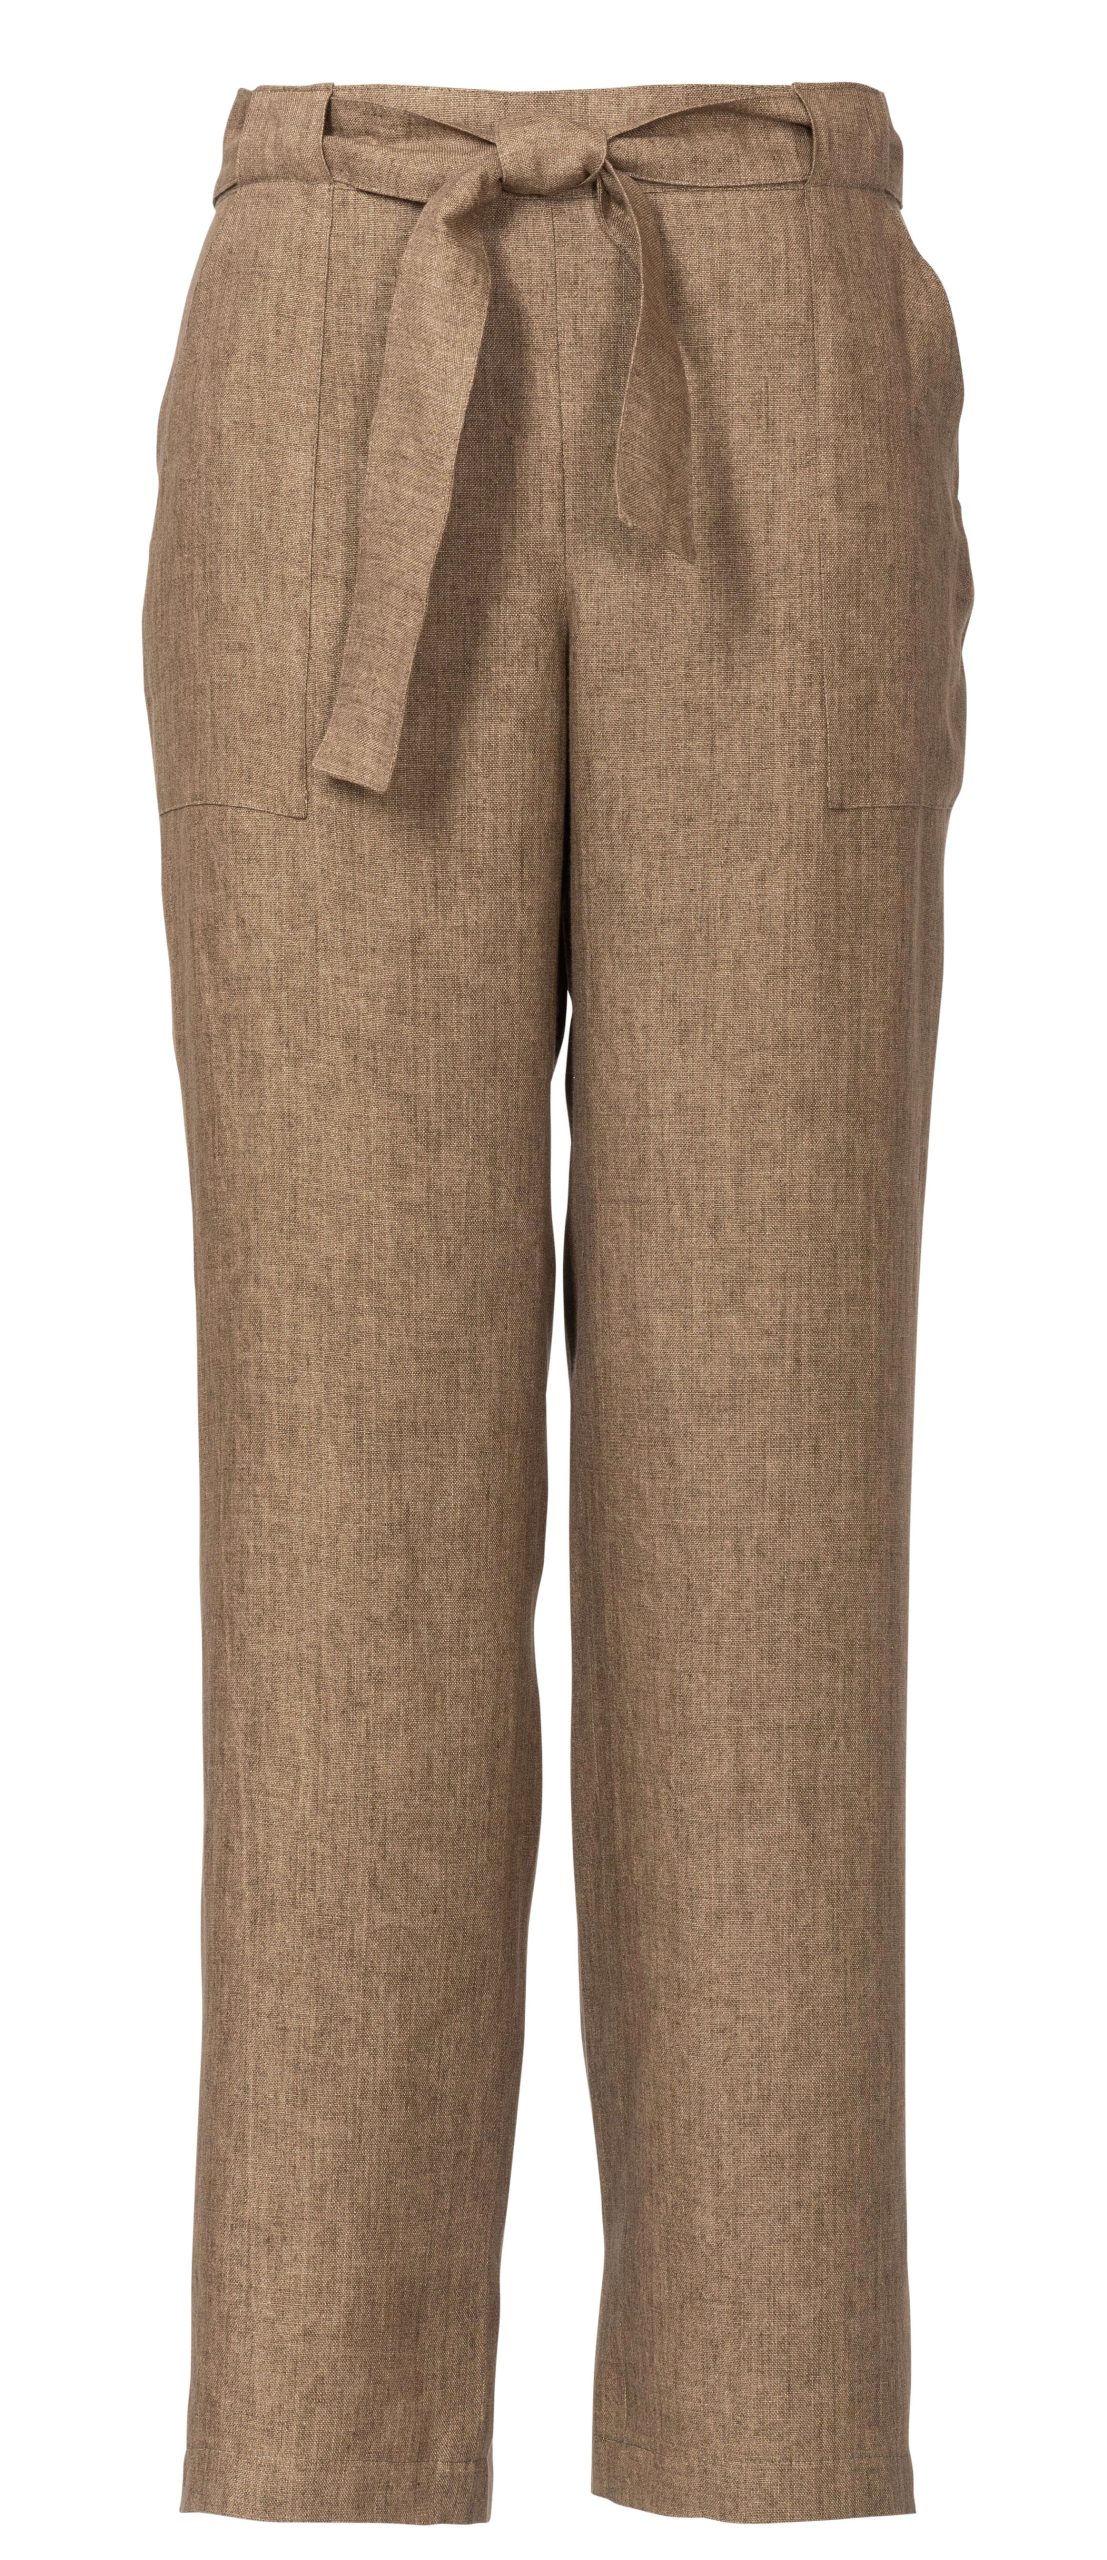 Burda Style Pattern 6218 Women’s Straight-Leg Pants - Sewdirect